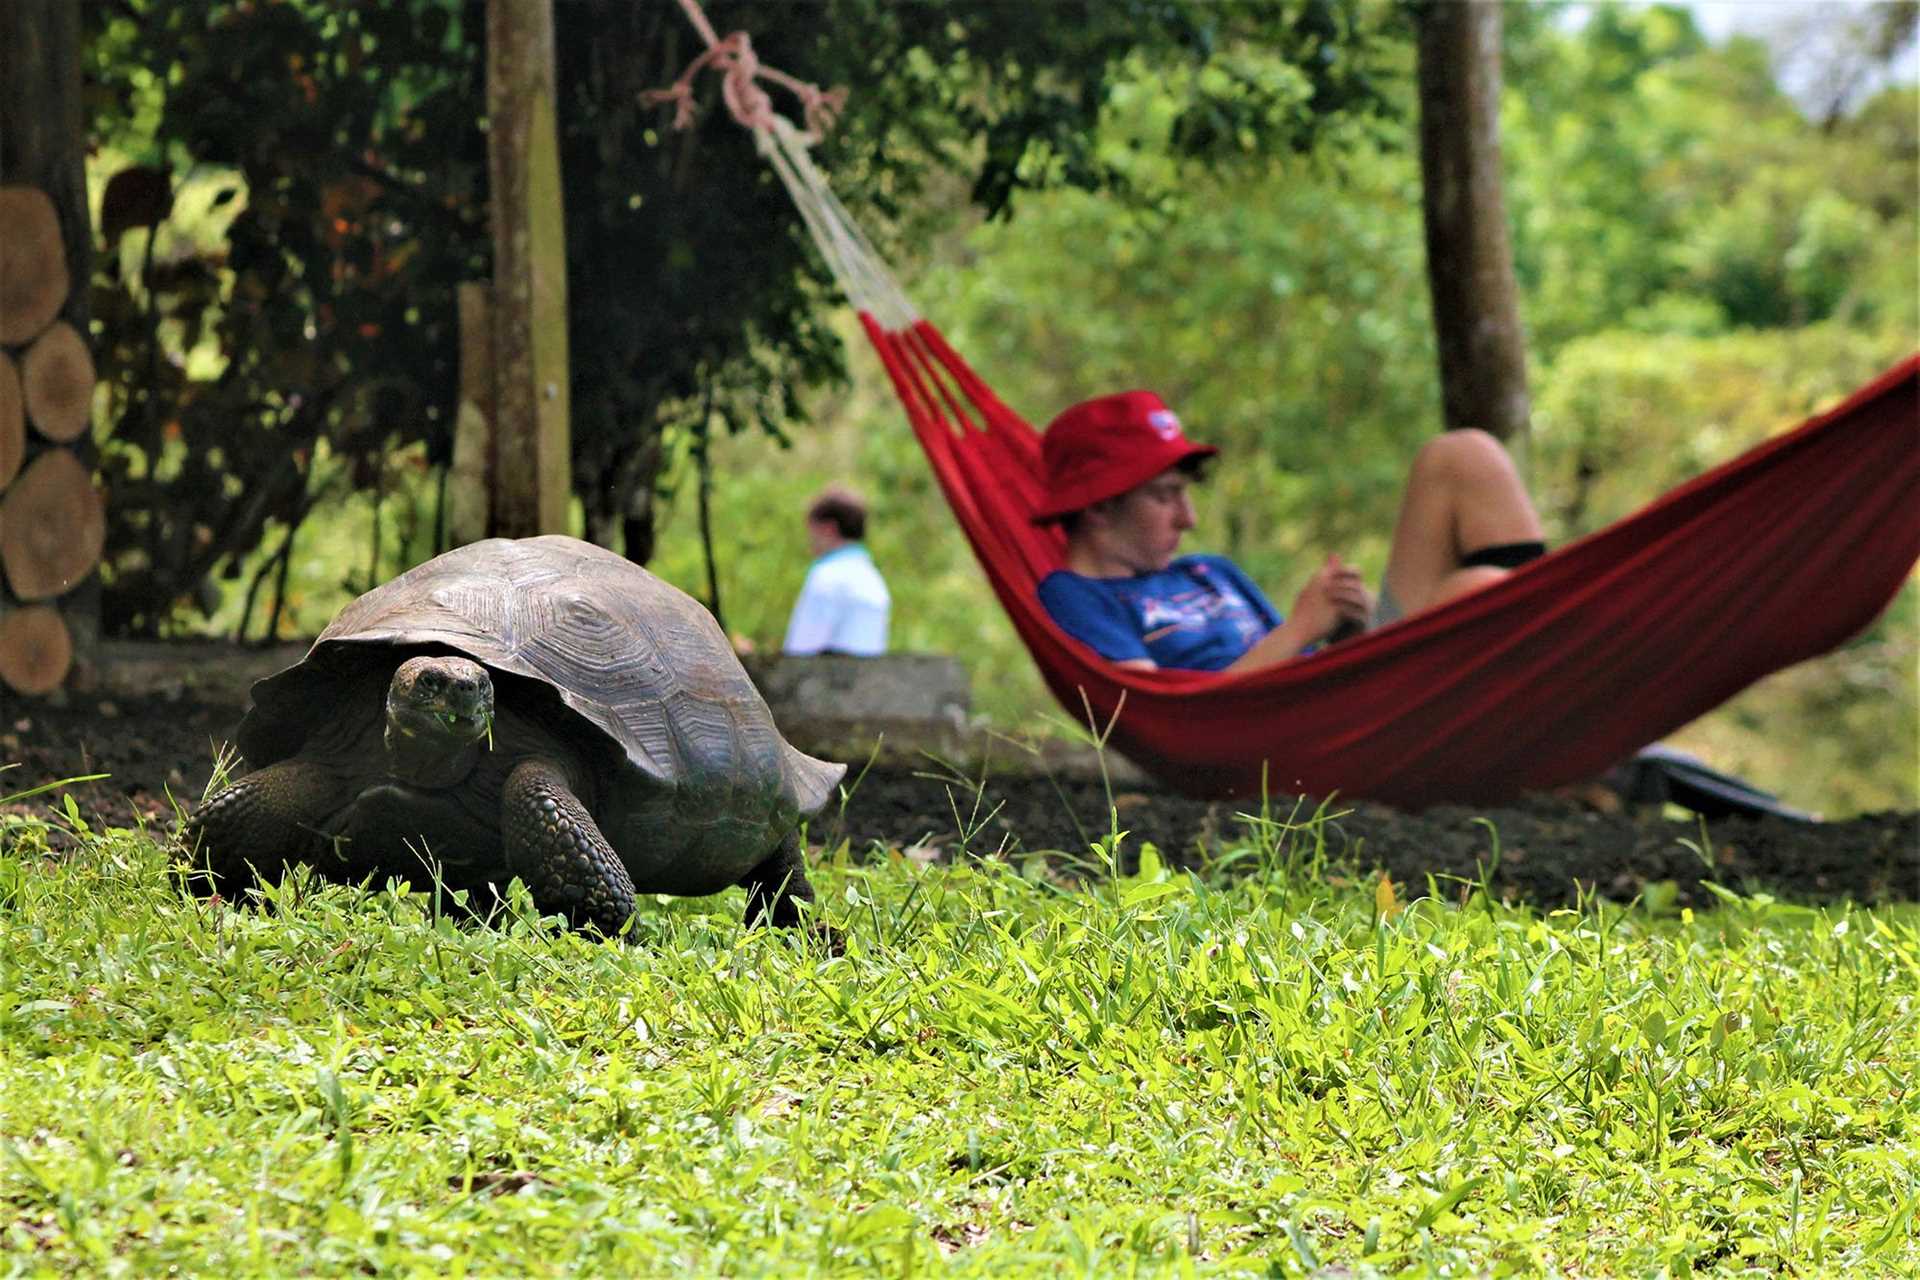 kid rests in hammock behind tortoise